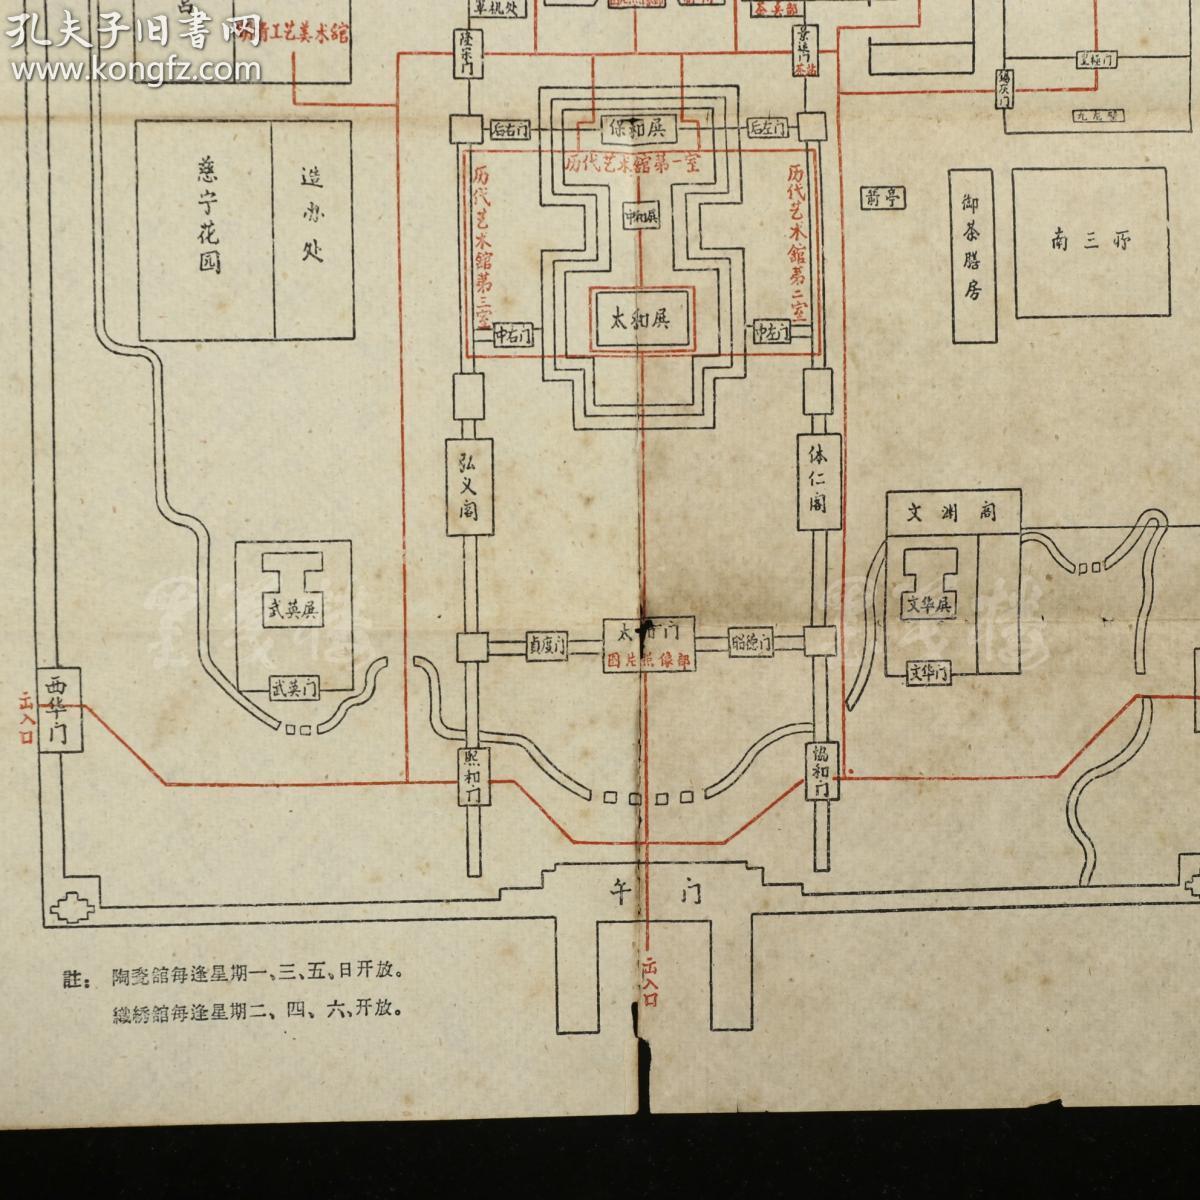 故宫博物院参观路线图 一张(尺寸38*27cm)hxtx315797